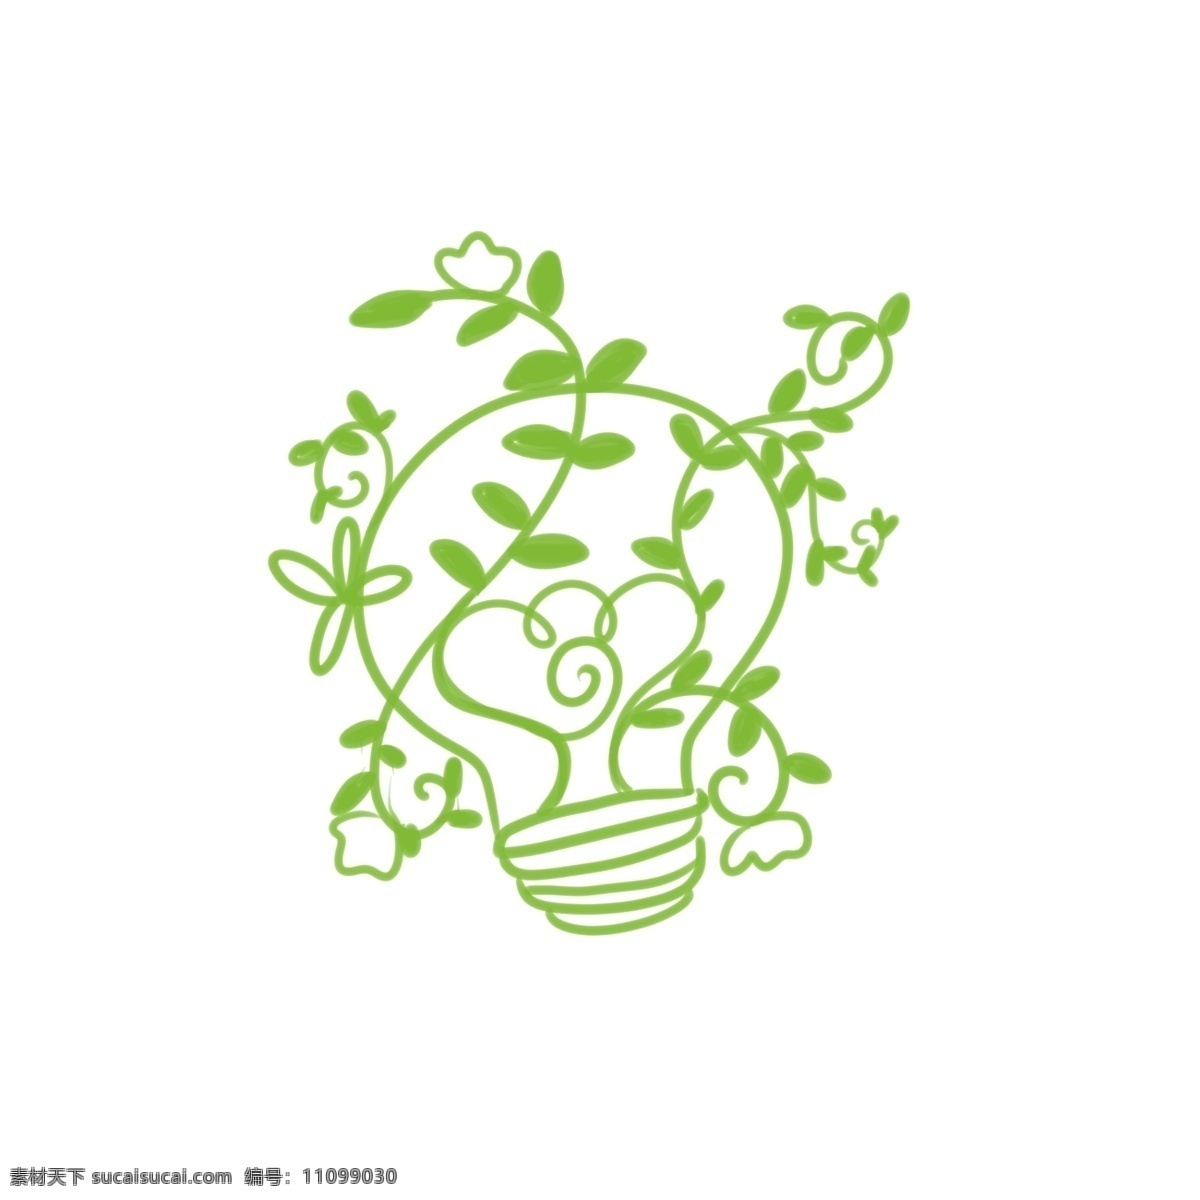 环保 绿色 藤蔓 灯泡 卡通 可爱 萌系 简约风格 小清新 创意 动漫 二次元 保护地球 植物